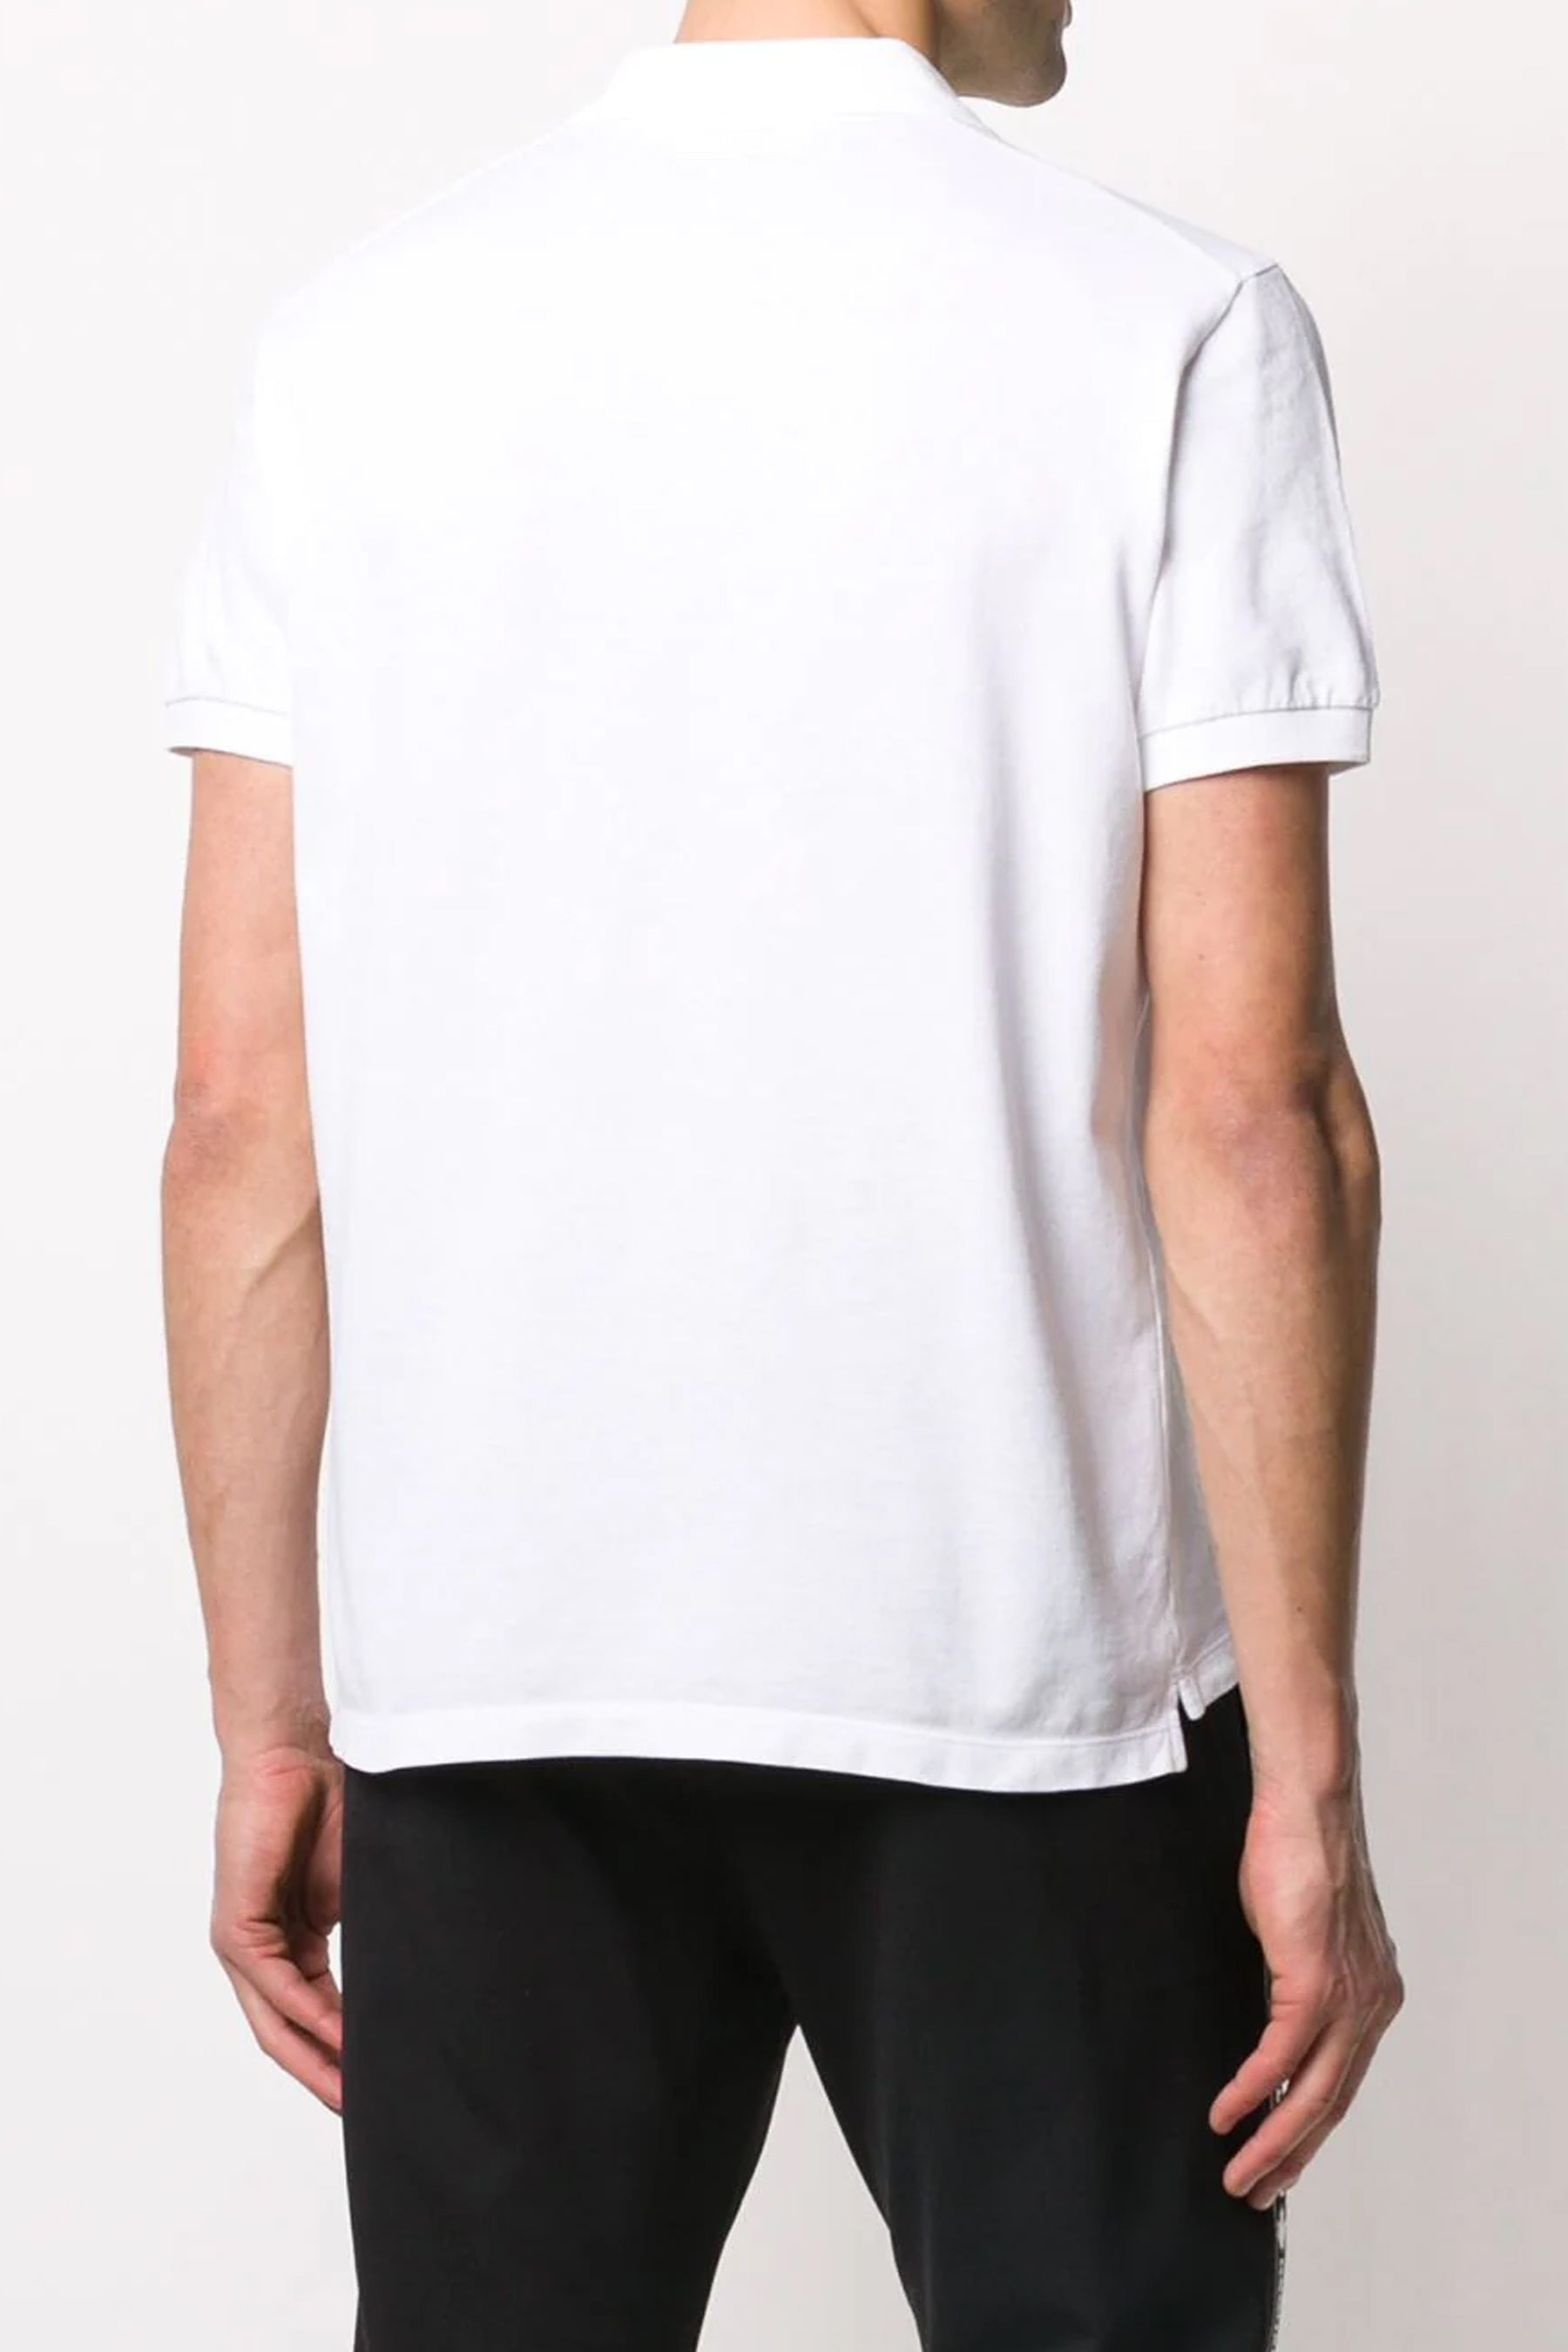 Dsquared2 Icon-print white polo shirt